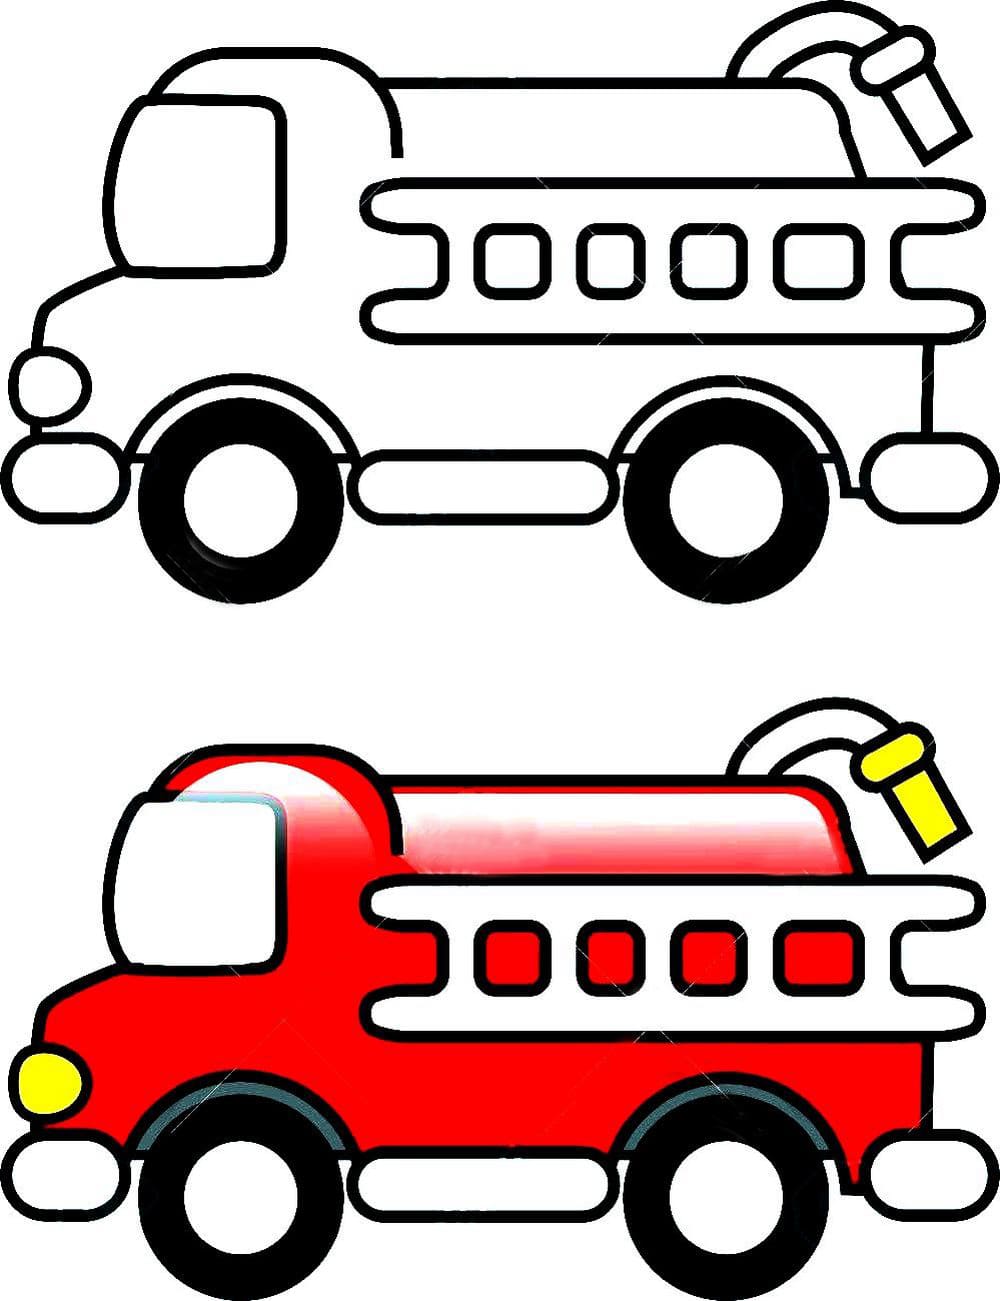 He reconocido Cilios fuego Dibujos para colorear Camión de bomberos - Imprimir para niños